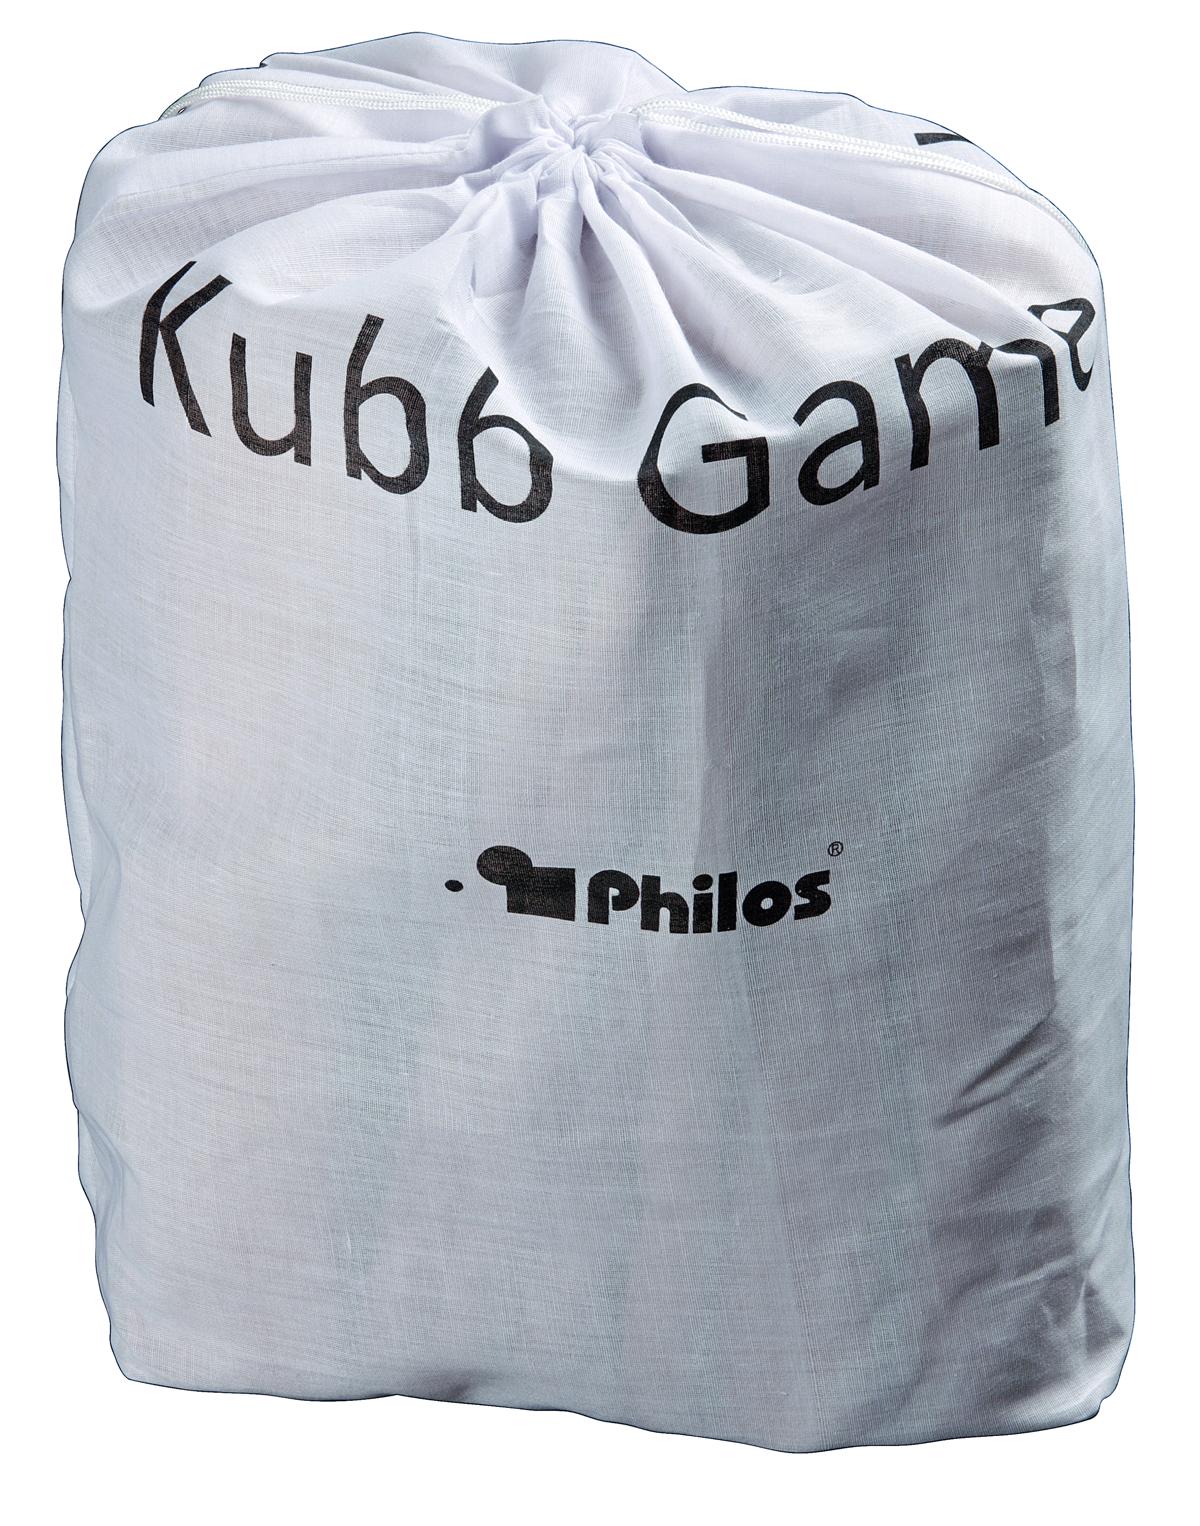 Kubb Game, Originalgröße, Buche, FSC 100%